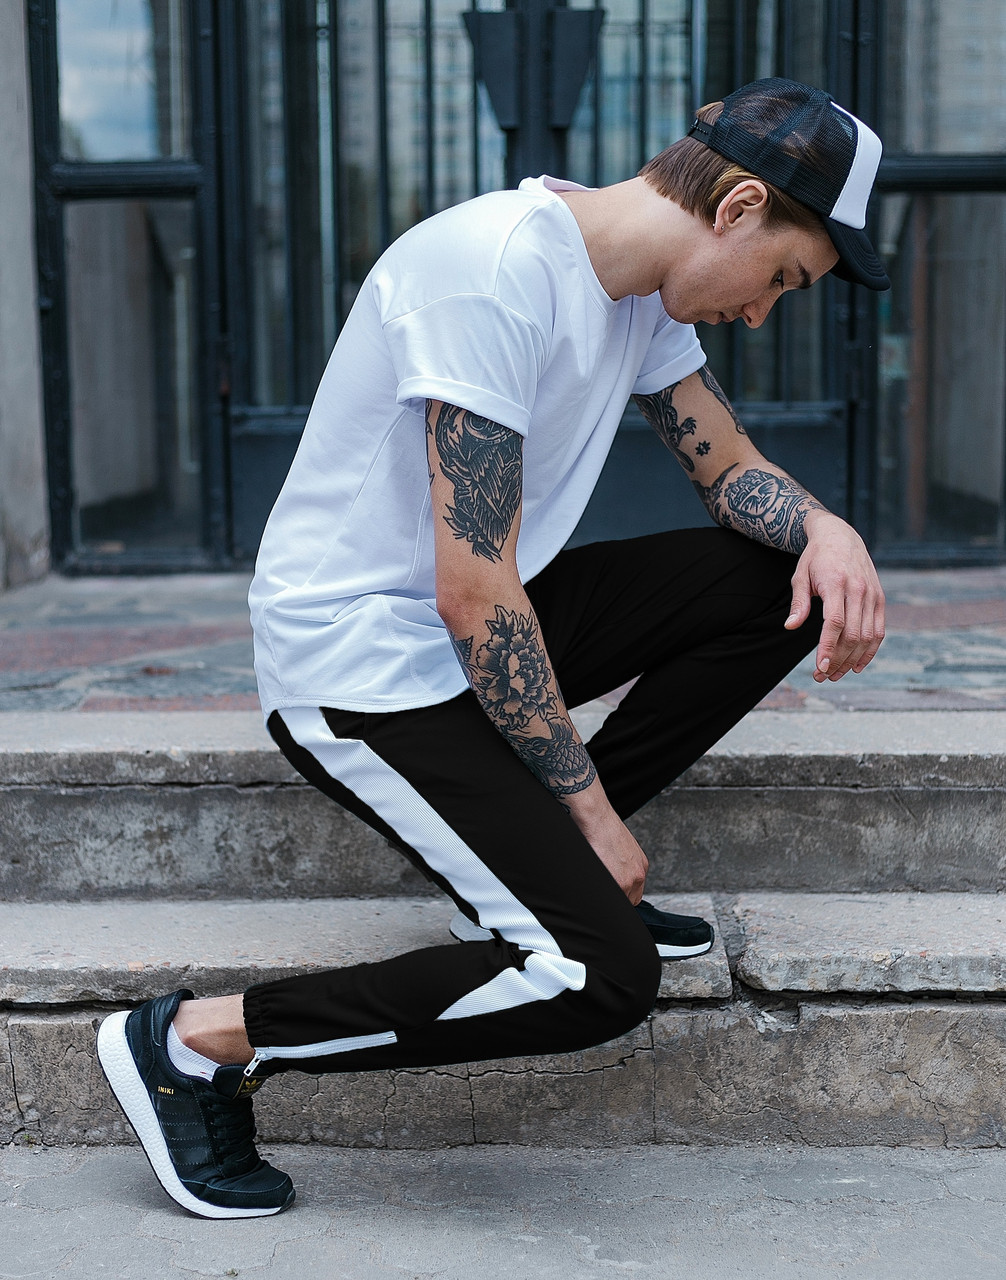 Спортивные штаны черные с белой полоской (лампасом) мужские бренд ТУР модель Рокки (Rocky) TURWEAR - Фото 2